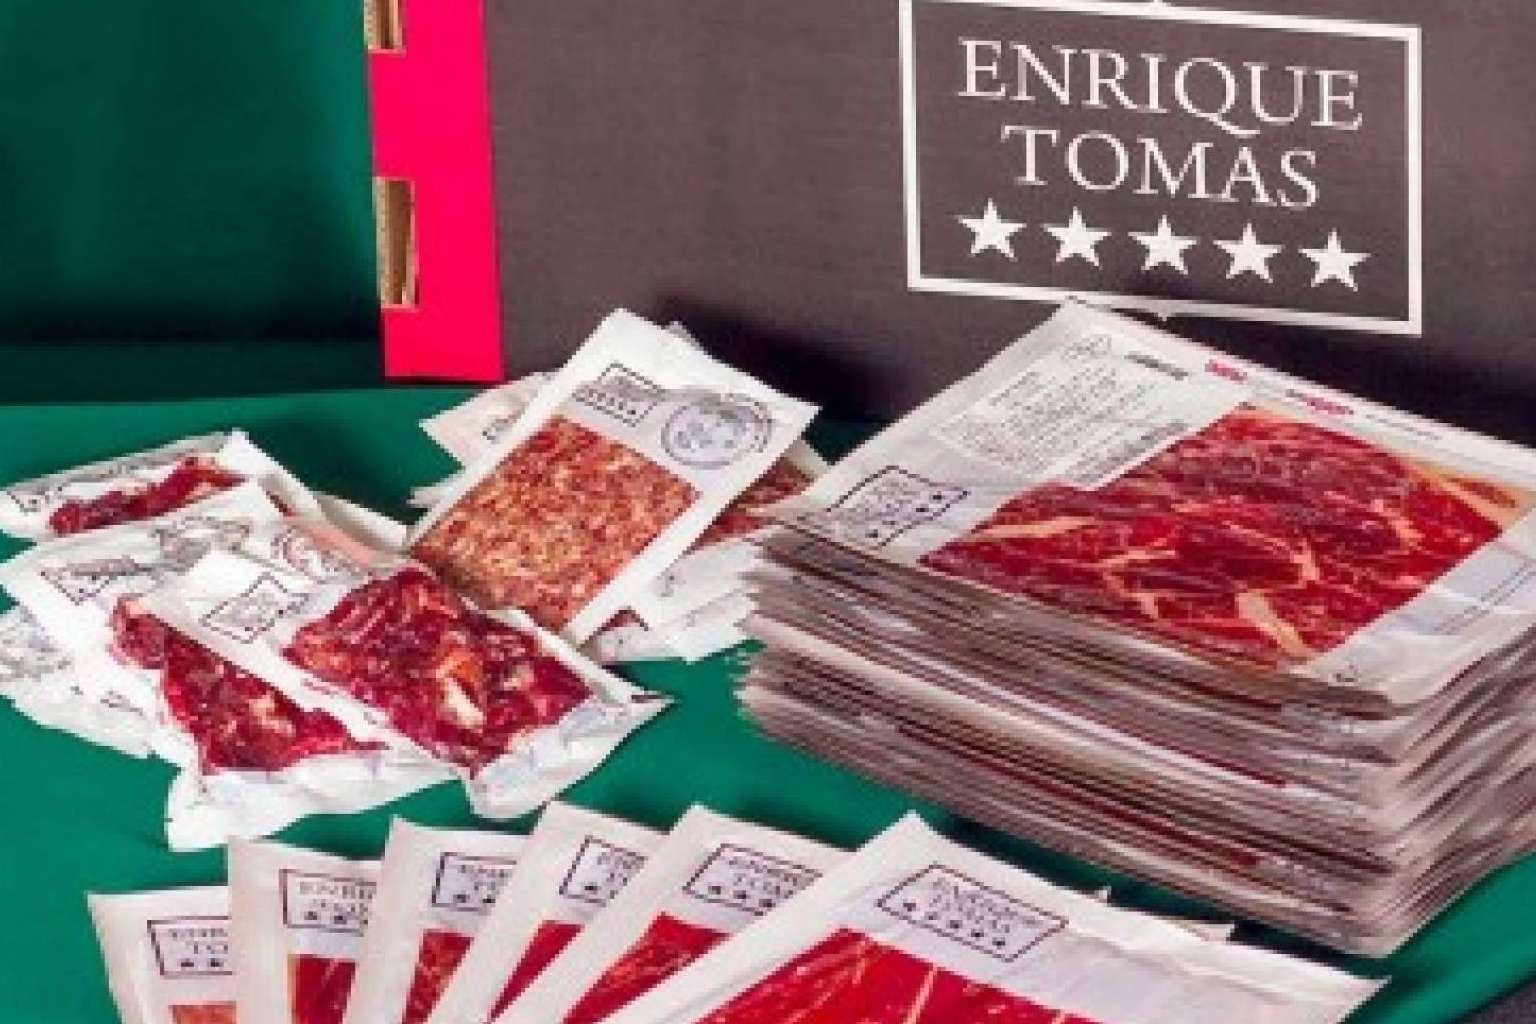 Comprar jamón ibérico, una cata exquisita con el sello de calidad Enrique Tomás